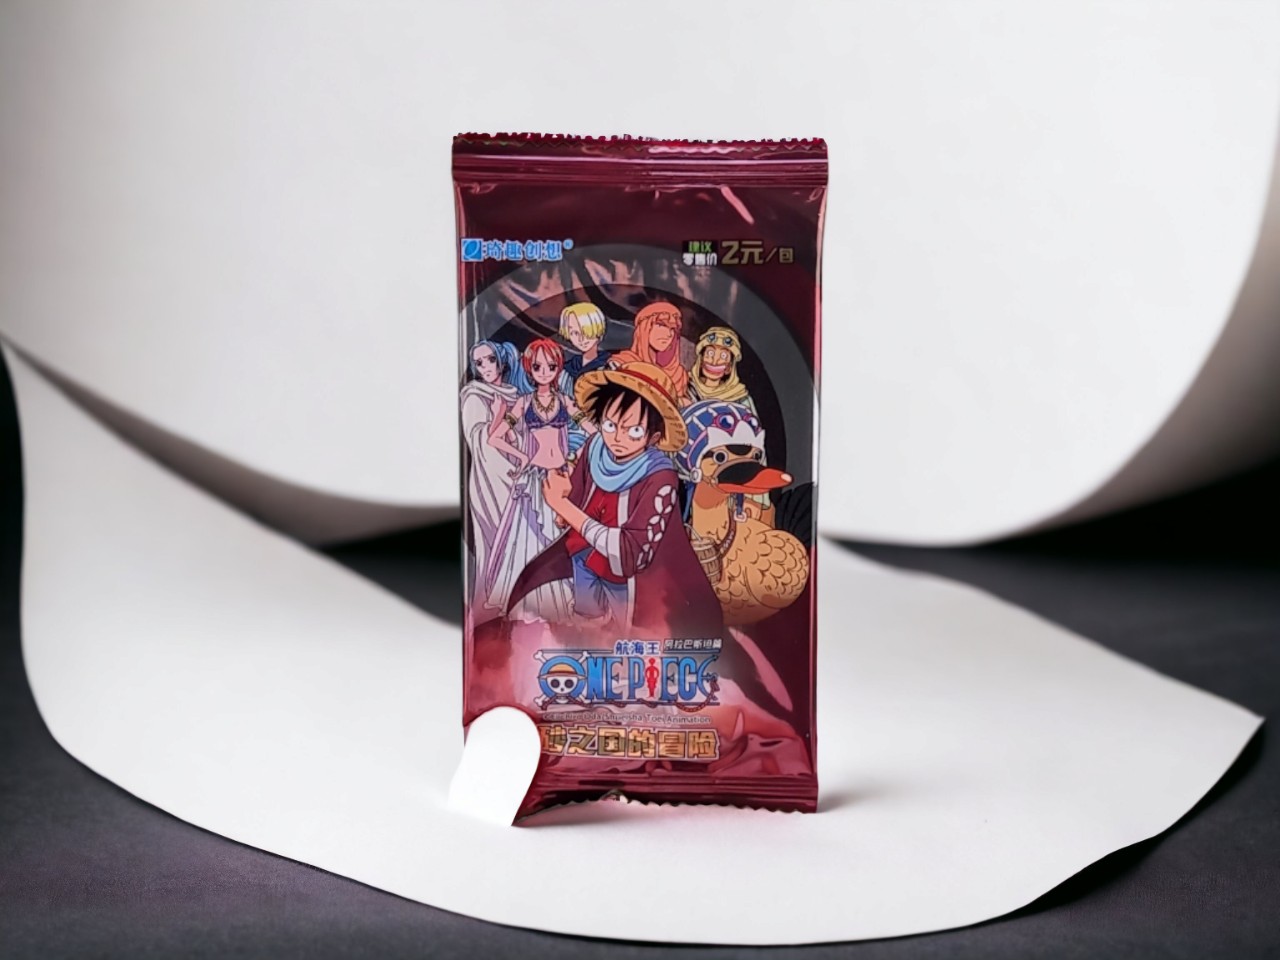 (FULL BOX) Hộp Thẻ Bài Anime One Piece ảnh thẻ nhân phẩm ngẫu nhiên chibi xinh xắn giá rẻ (hộp 24 pack)